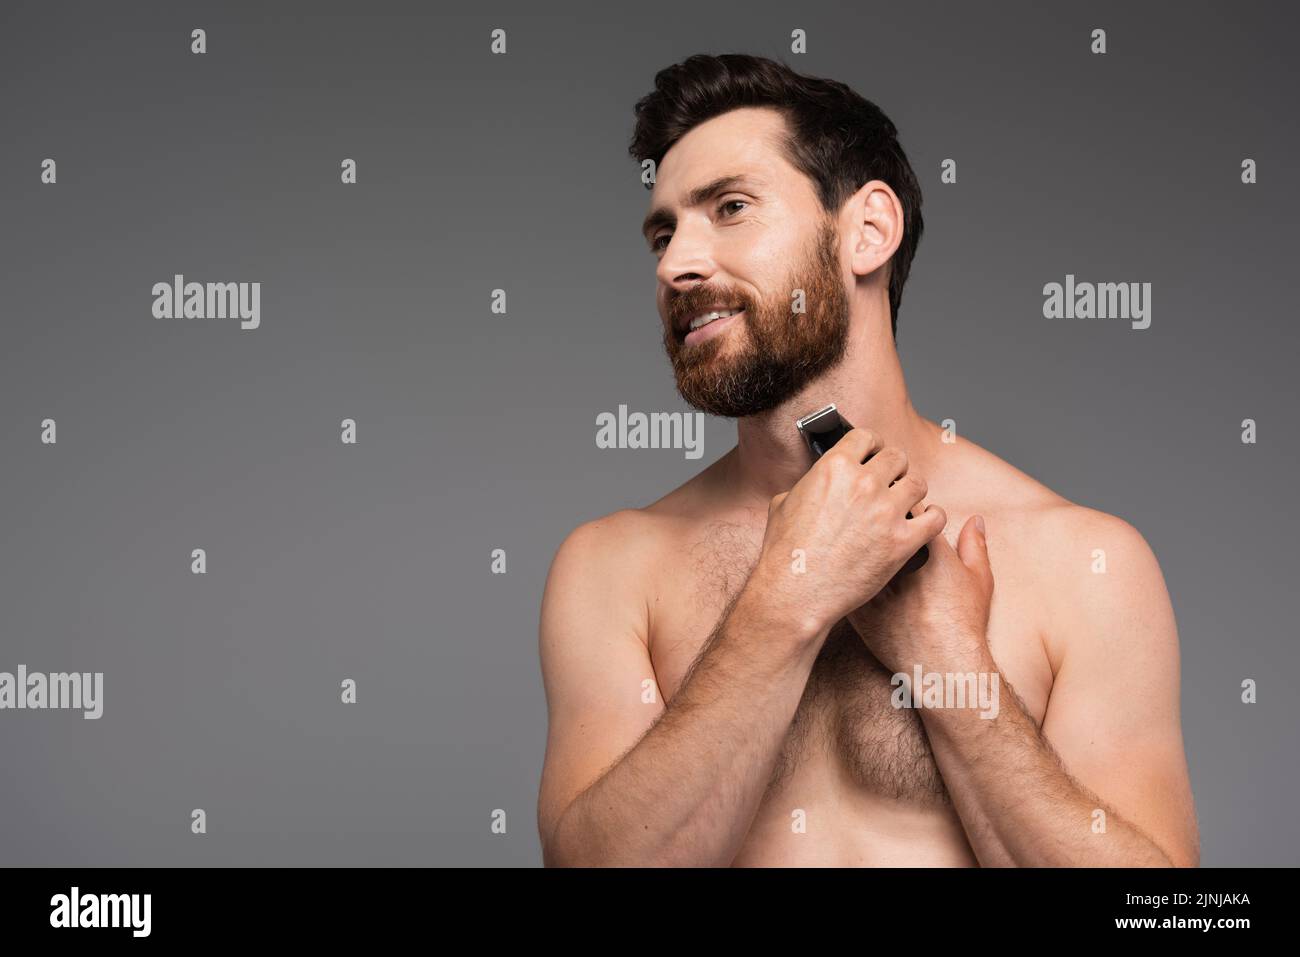 hombre alegre y sin camisa con pelo en el pecho afeitándose con afeitadora eléctrica aislada en gris, imagen de archivo Foto de stock